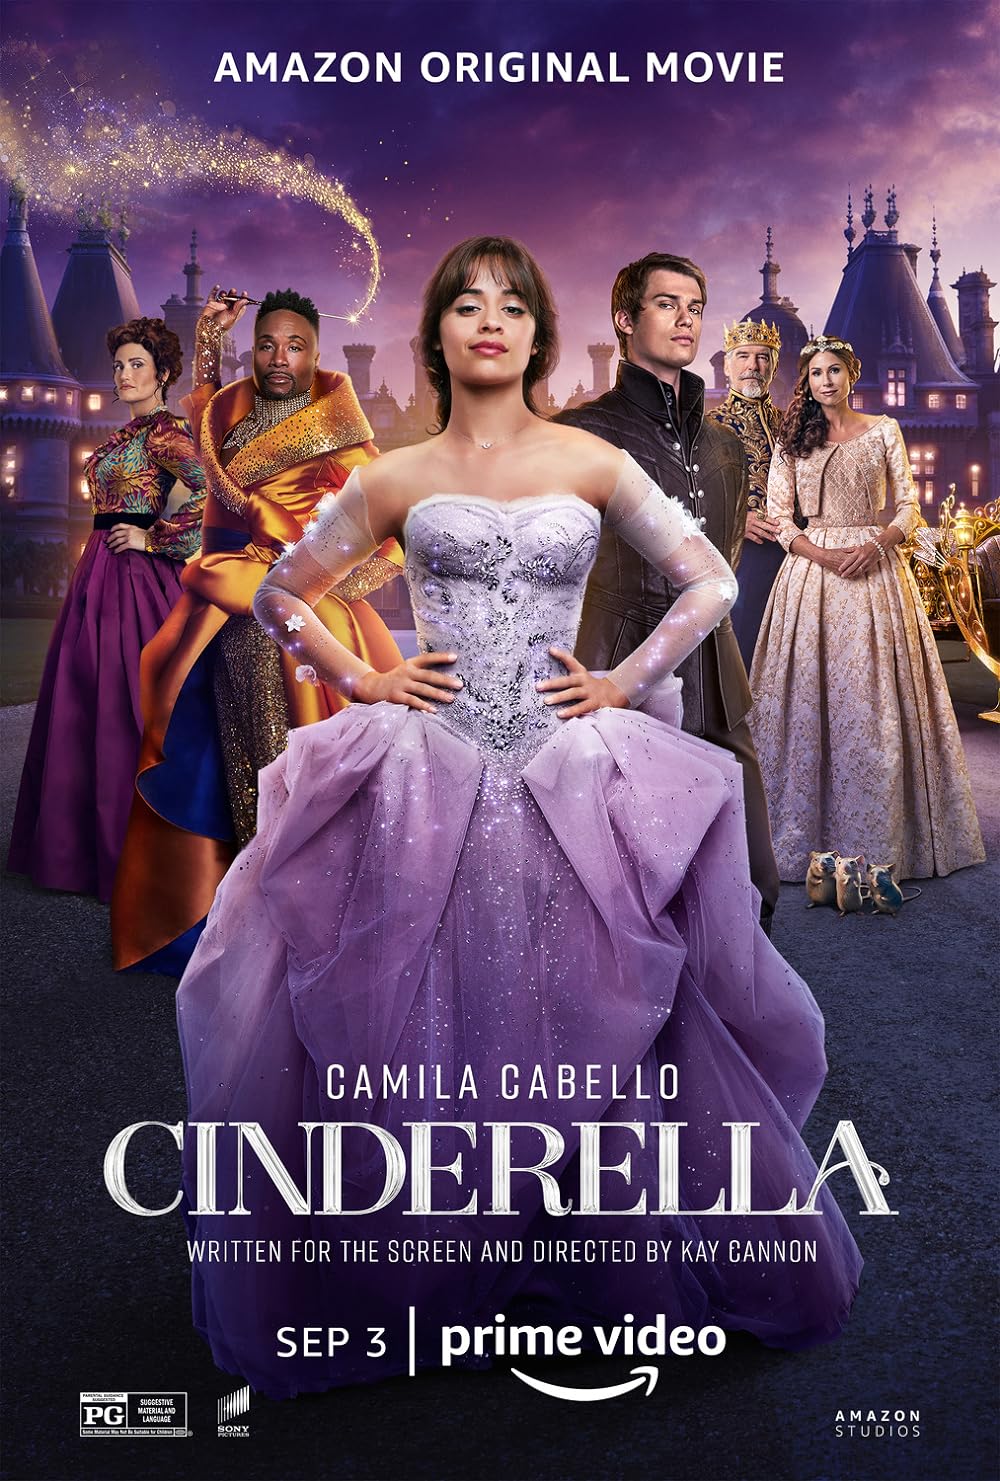 FULL MOVIE: Cinderella (2021)